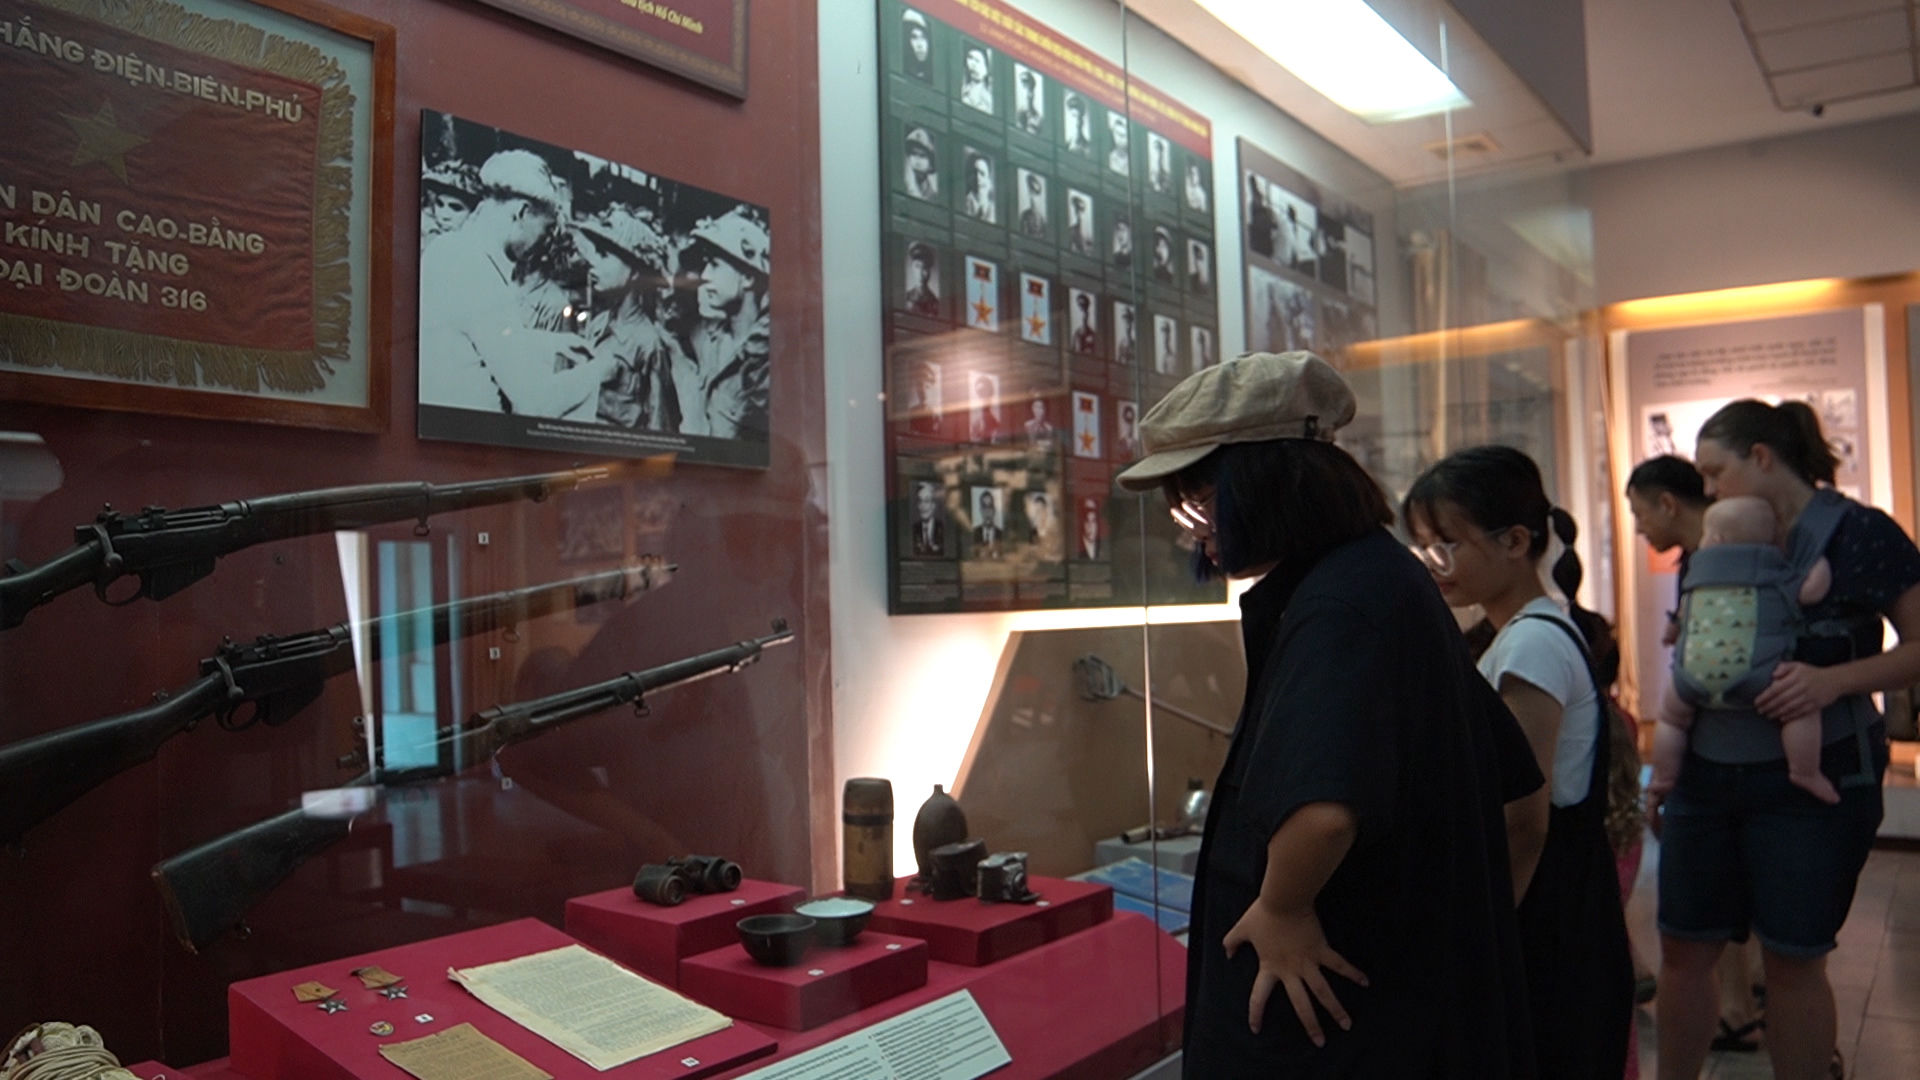 Nhìn về chiến thắng Điện Biên Phủ từ những hiện vật tại bảo tàng- Ảnh 2.